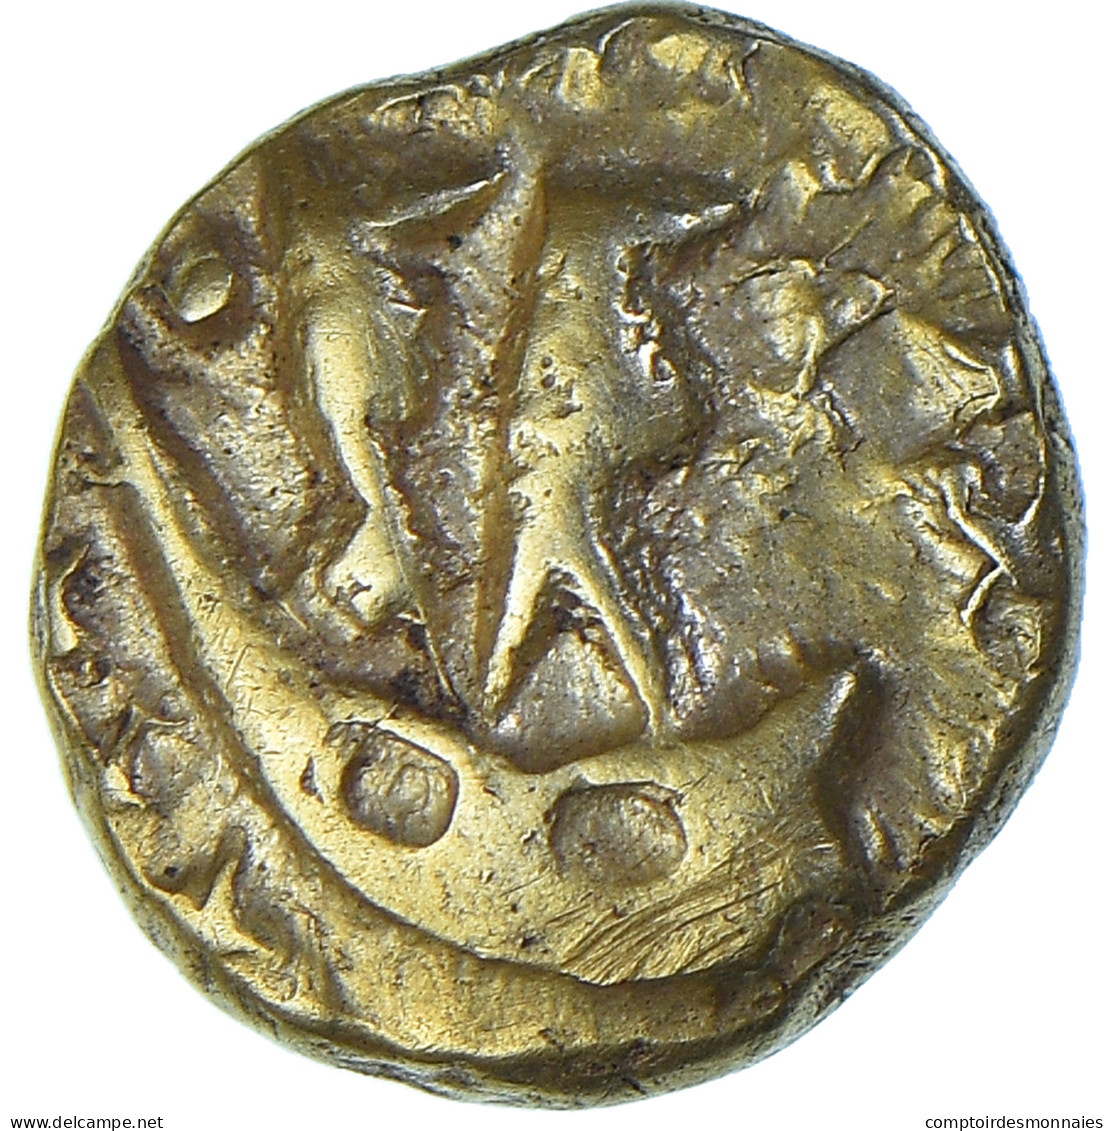 Monnaie, Morins, 1/4 Statère, Ier Siècle AV JC, SUP, Or, Delestrée:249 - Gauloises